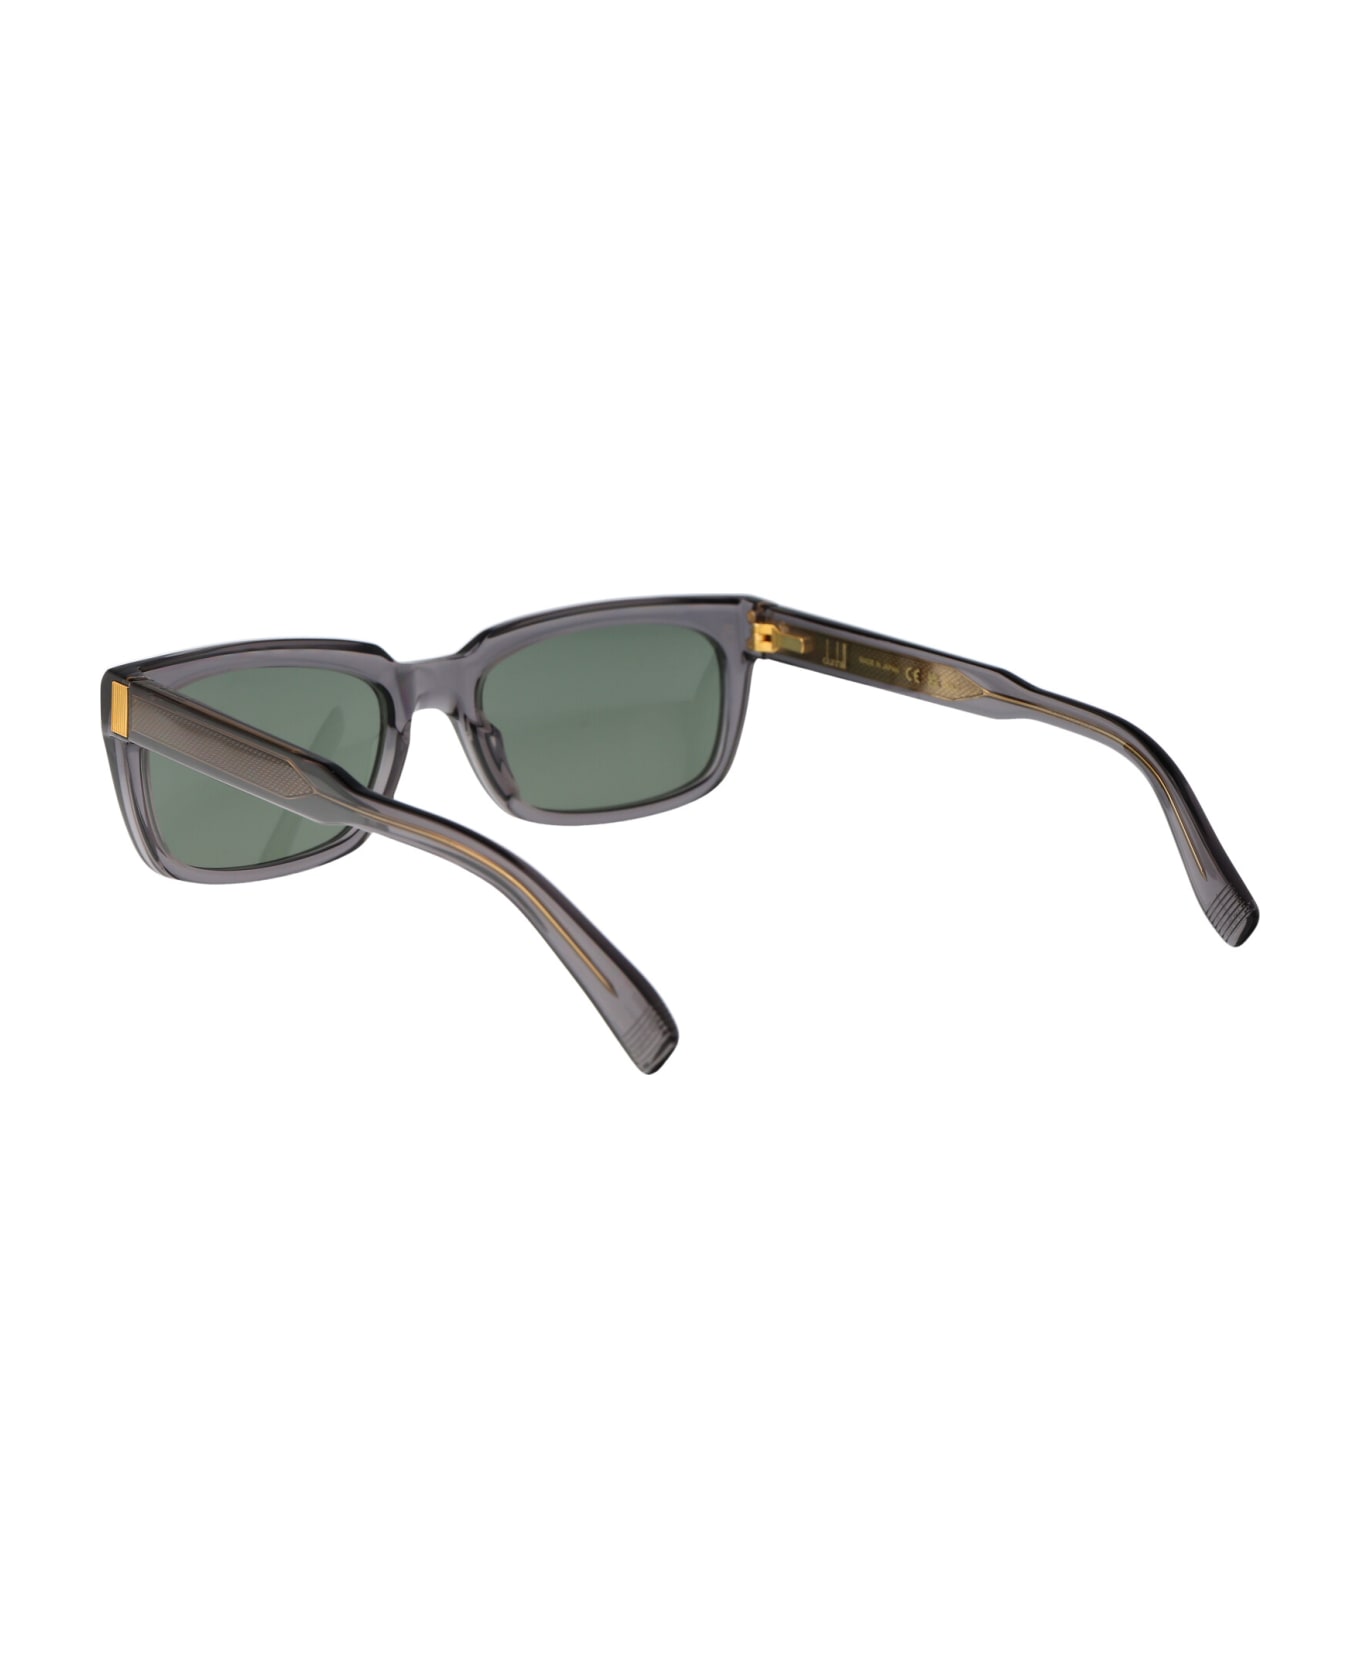 Dunhill Du0056s Sunglasses - 003 GREY GREY GREEN サングラス